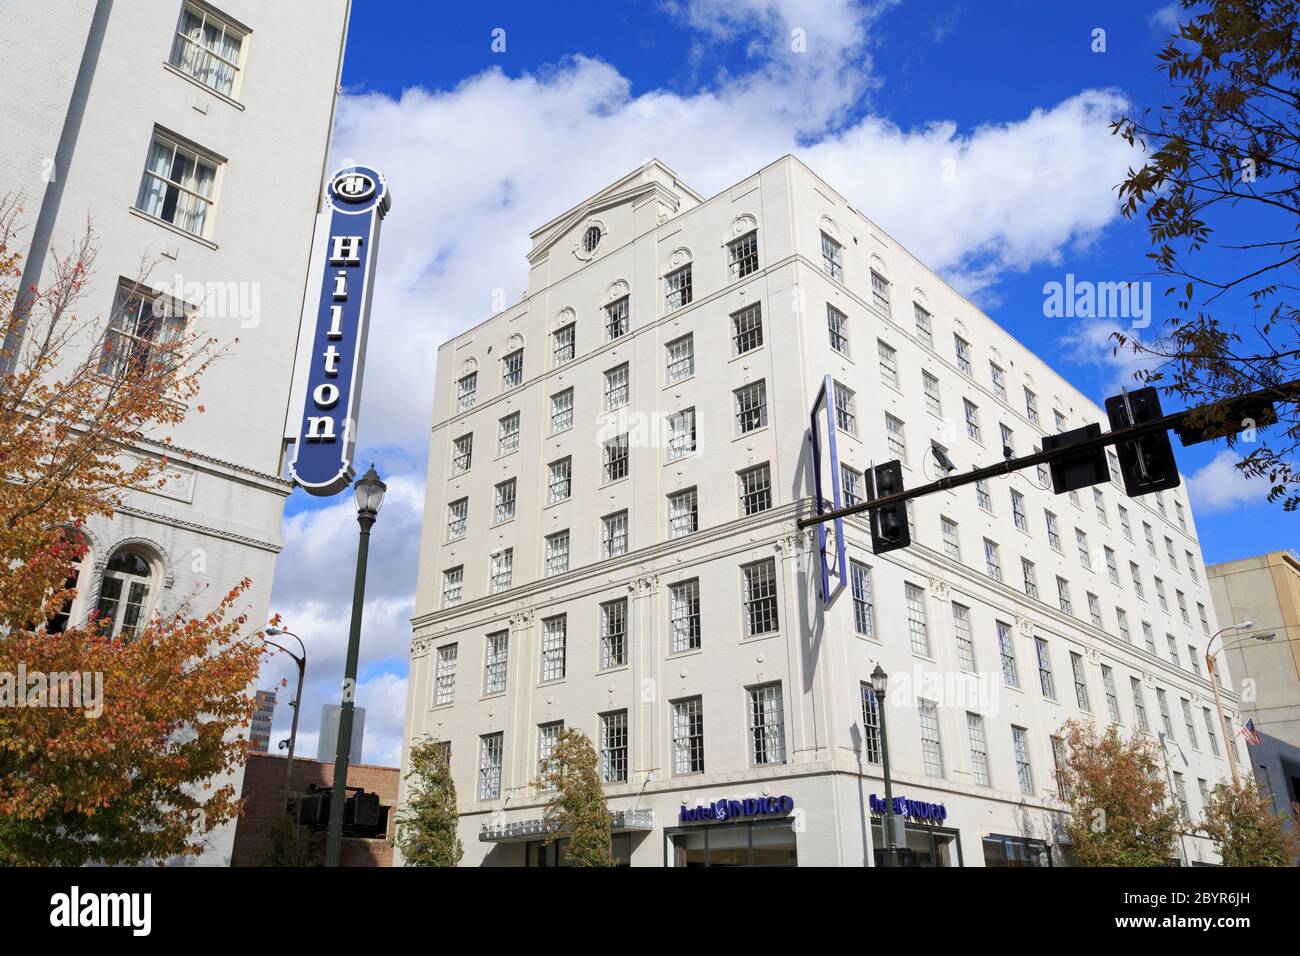 Hotels on LaFayette Street, Baton Rouge, Louisiana, USA Stock Photo